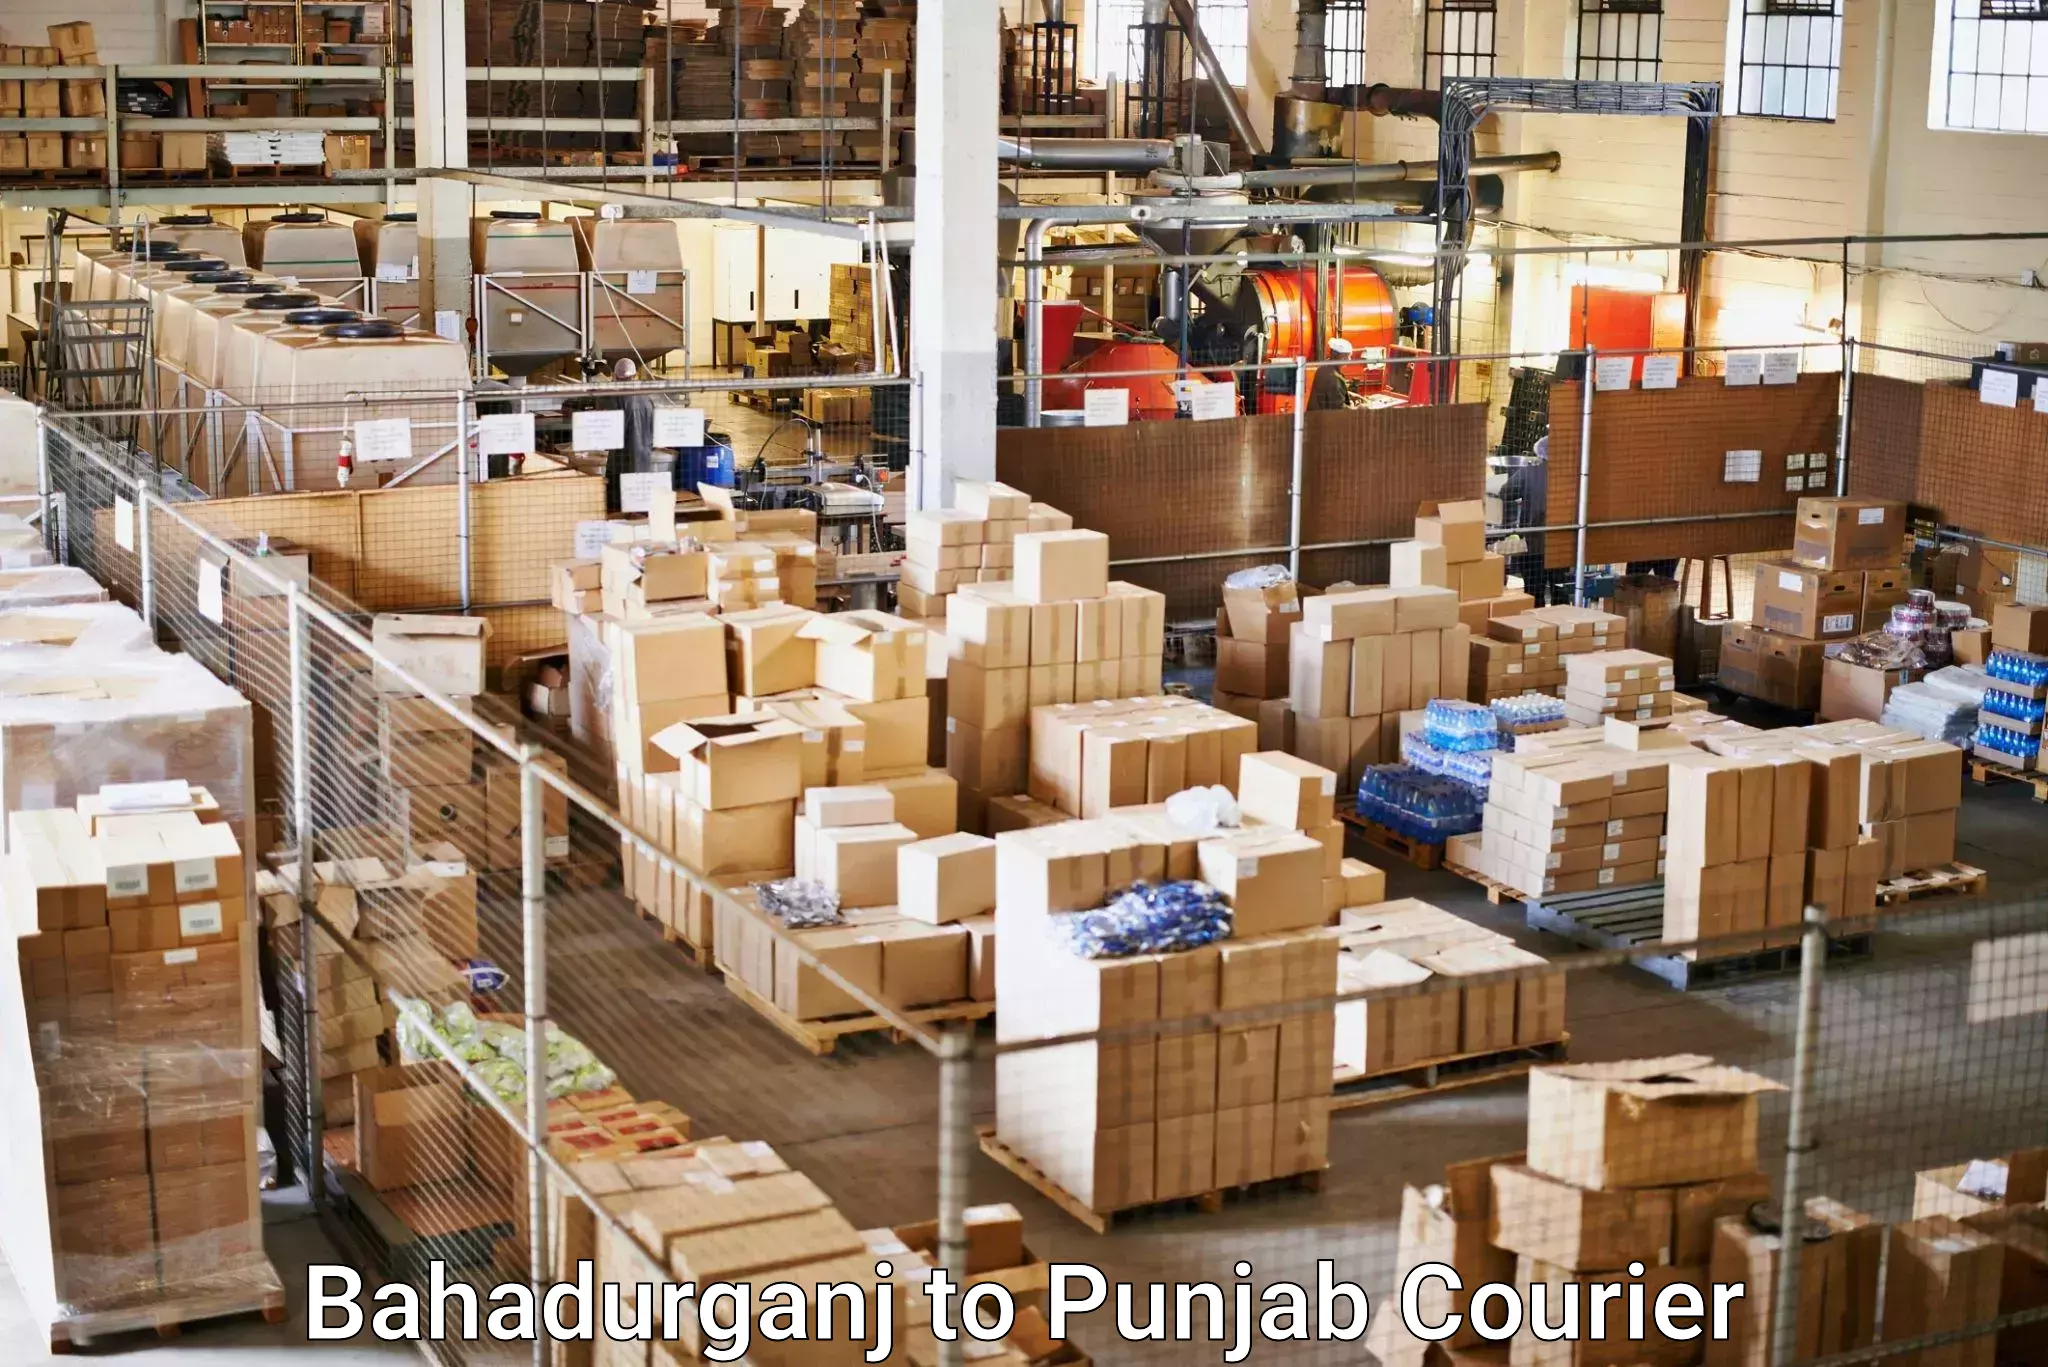 Smart logistics strategies Bahadurganj to Firozpur